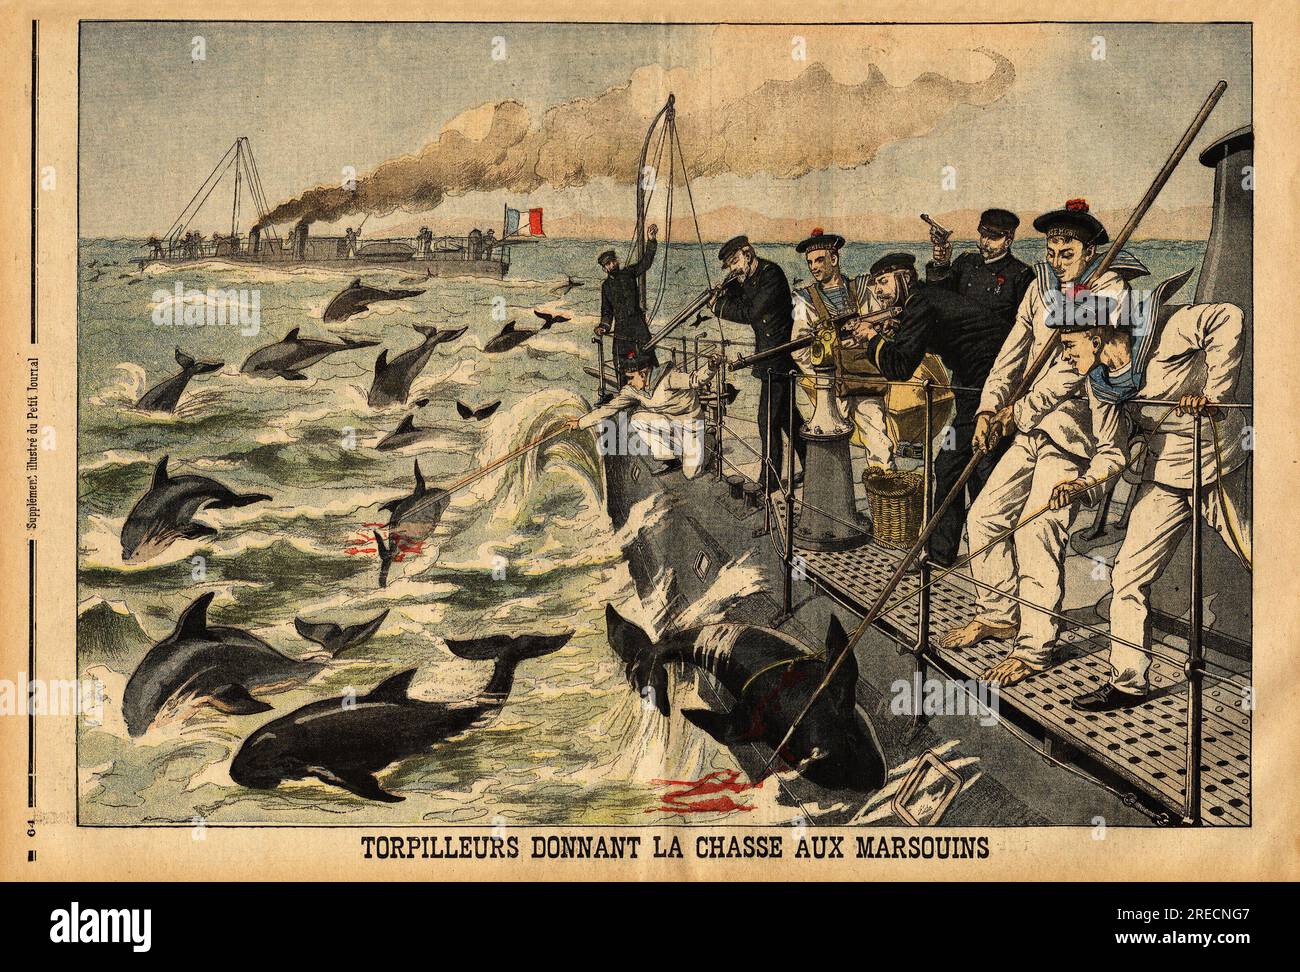 Les torpilleurs donnant la chasse aux marsouins, qui envahissent la mediterranee en faisant fuir les bancs de poissons (sardine, acciughe, maquereaux) et dechirent les filets des pecheurs. Gravure in "le petit Journal" 2221903. . Foto Stock